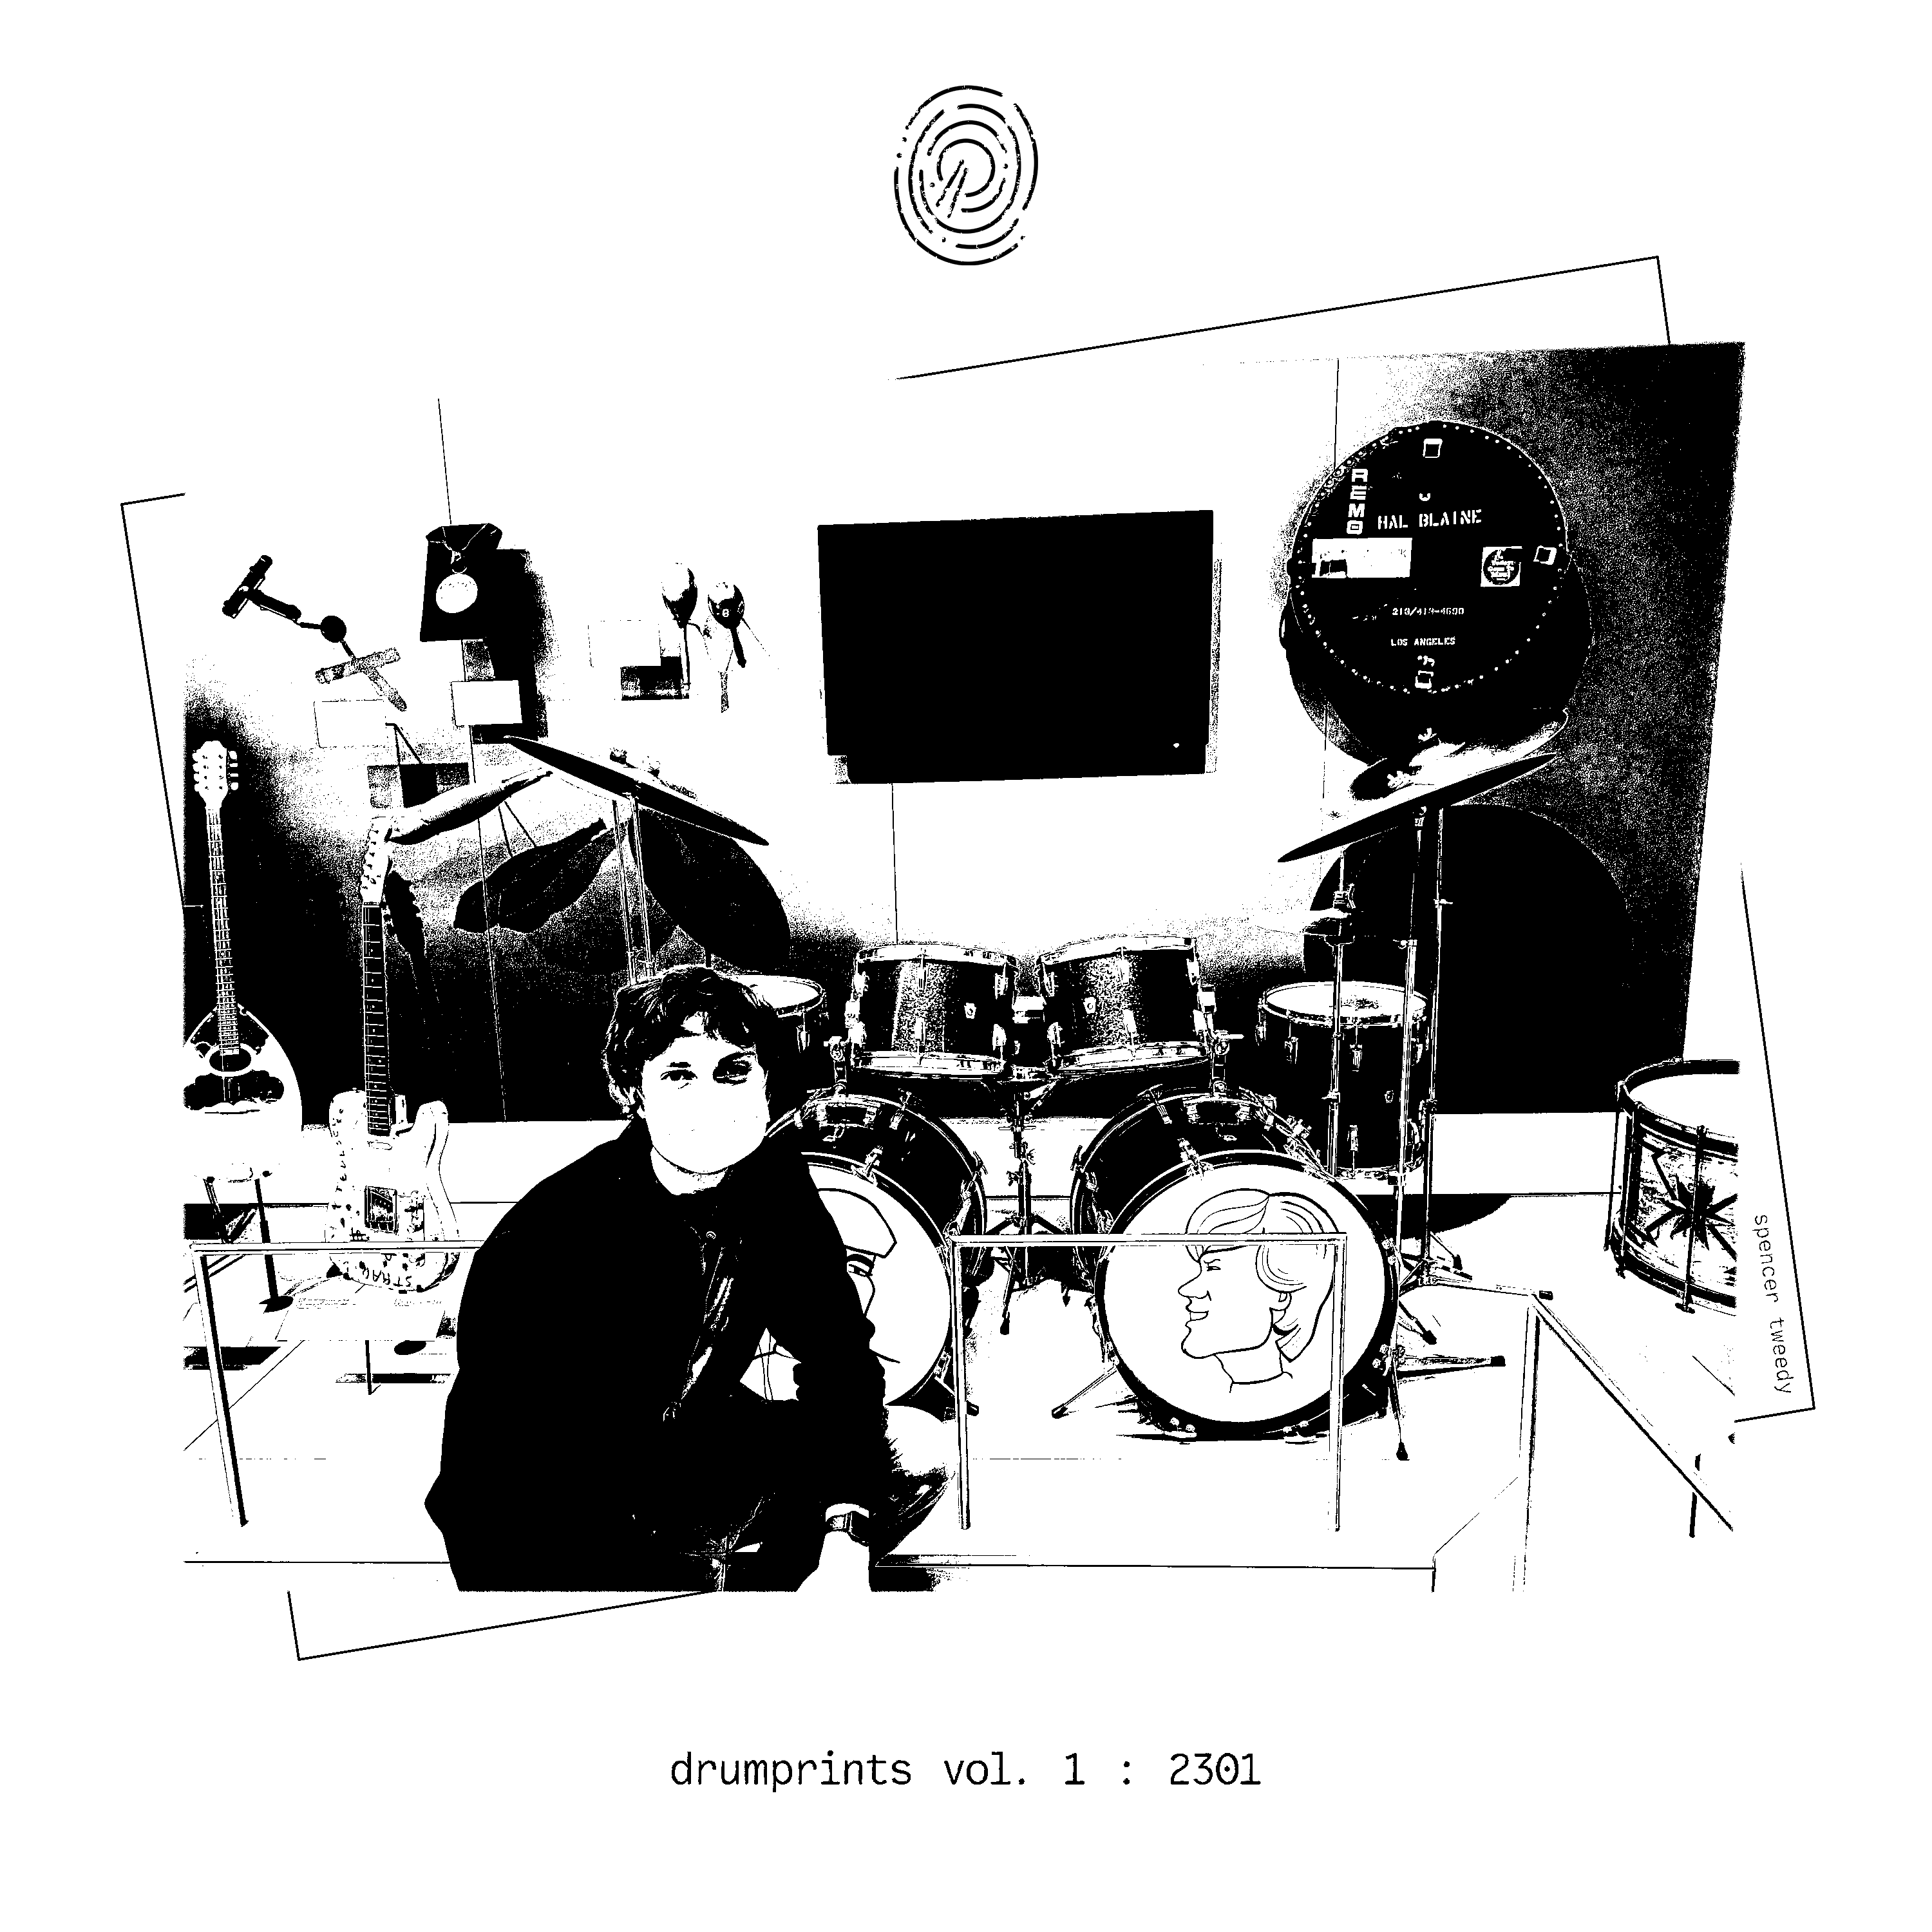 drumprints vol. 1: 2301 album art